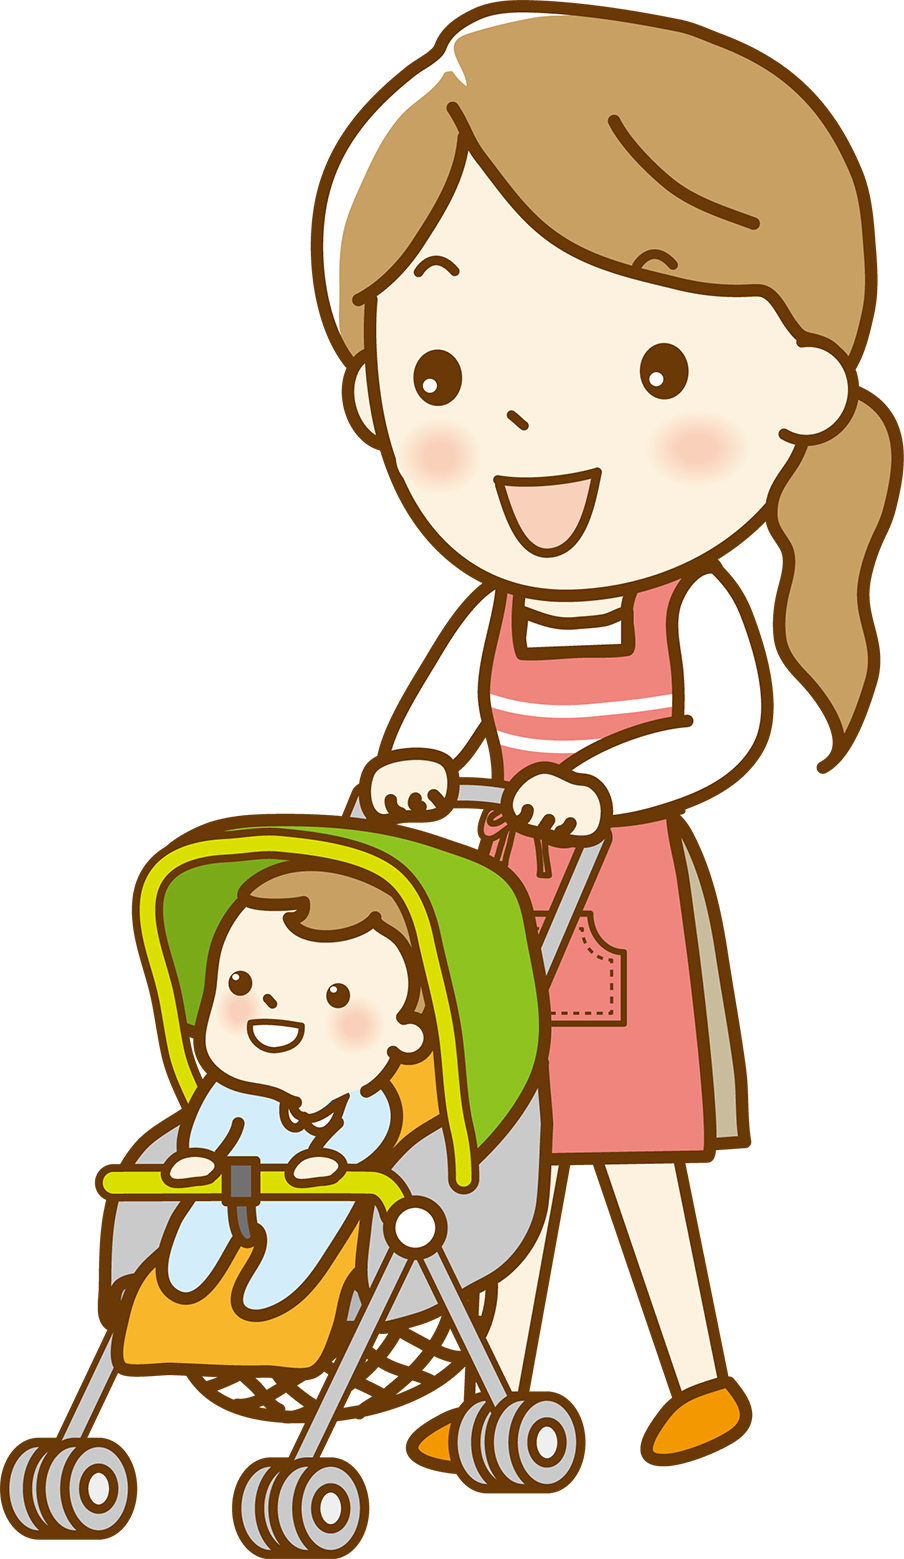 <img src="image.jpg" alt="ベビーカーを利用するママと赤ちゃんのイラストの写真">